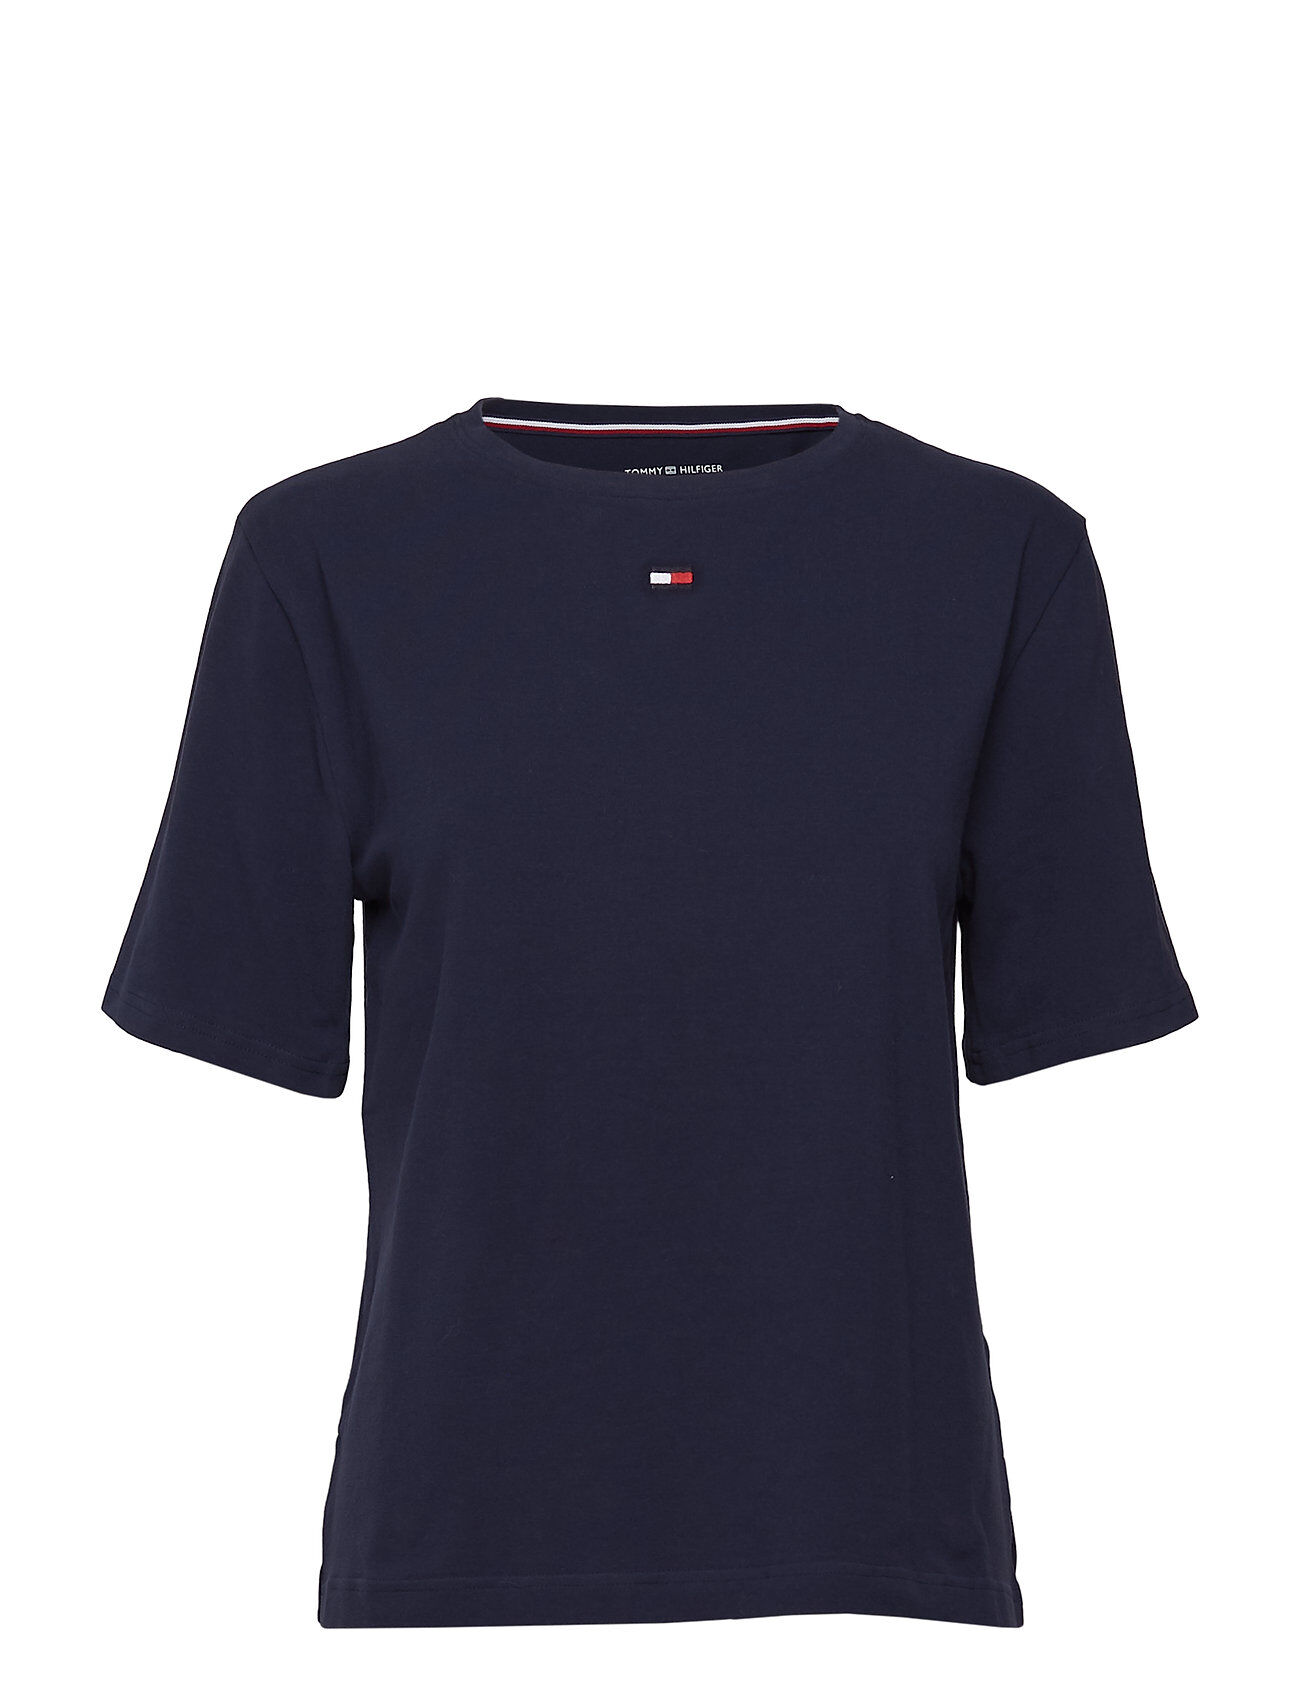 Tommy Hilfiger Bn Tee Half T-shirts & Tops Short-sleeved Blå Tommy Hilfiger